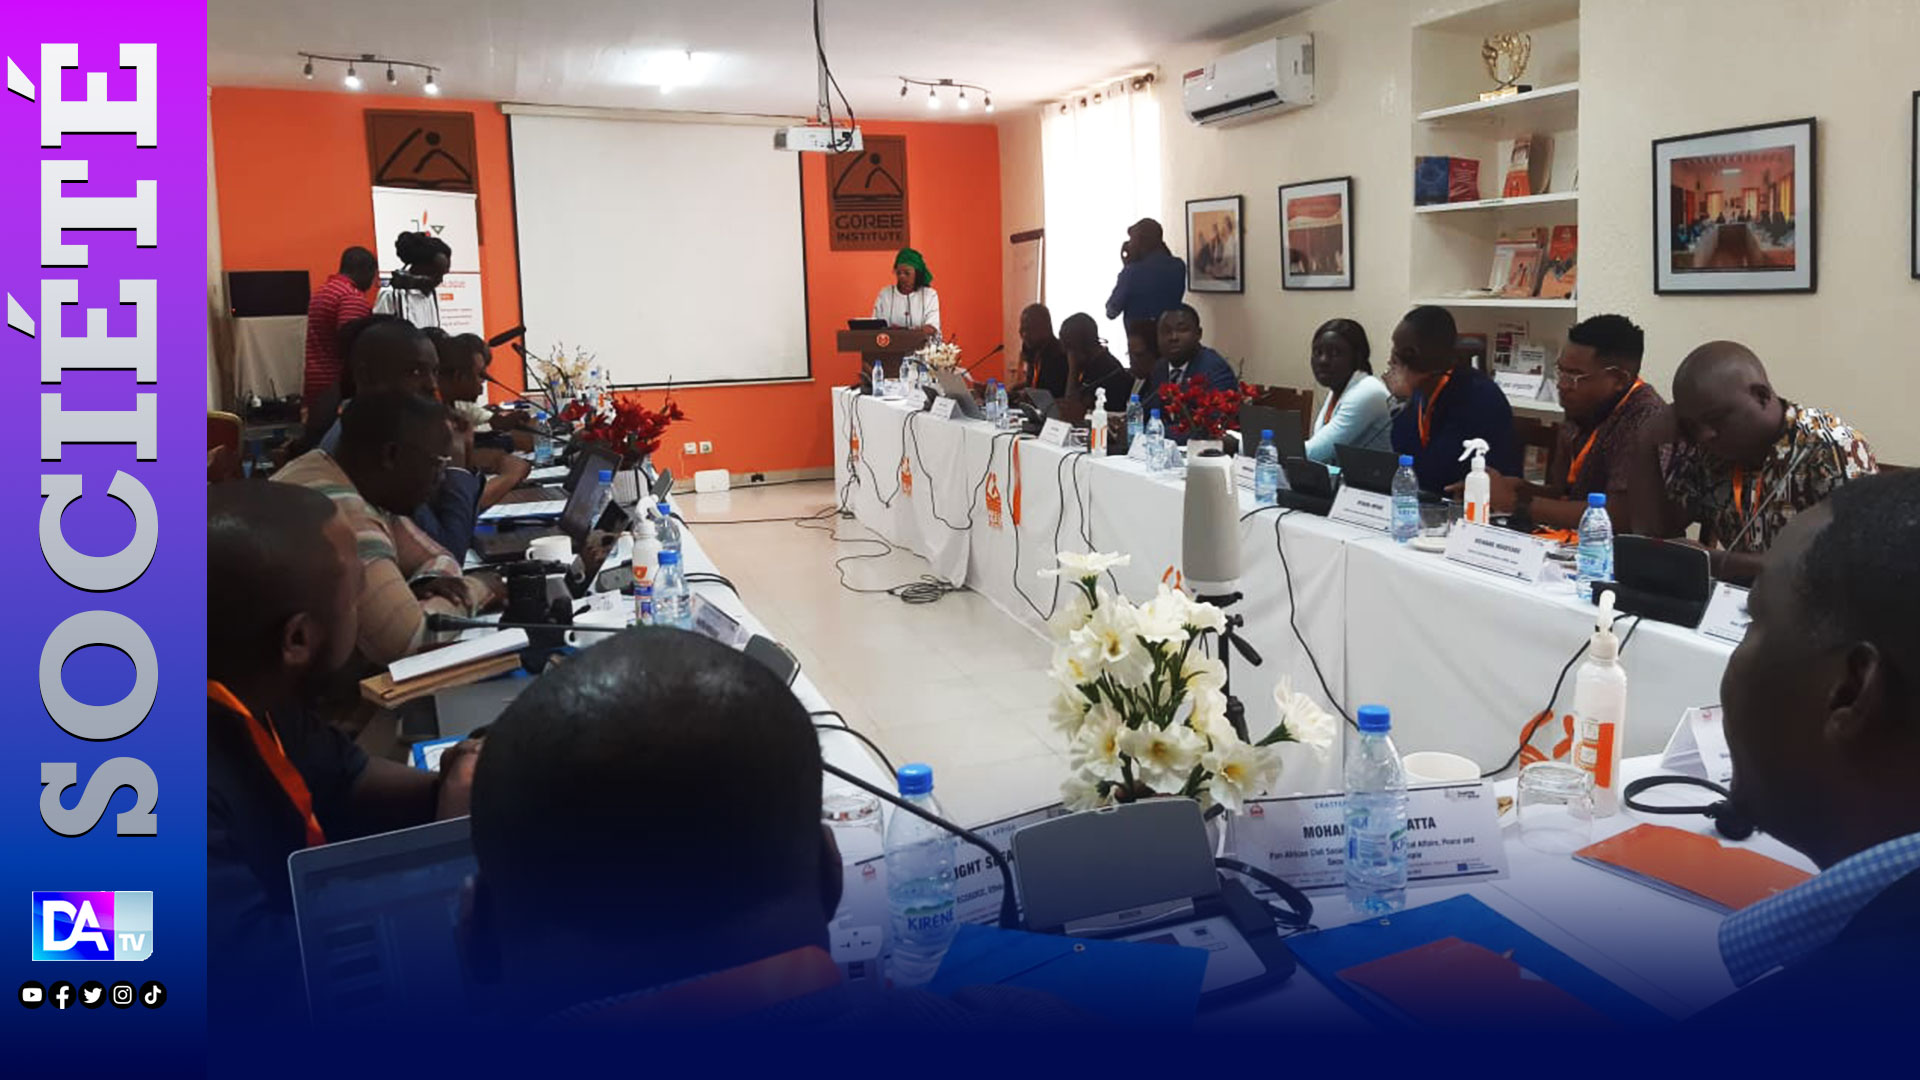 Renforcement de l’engagement citoyen pour la gouvernance démocratique en Afrique : Les parties prenantes réunies à Gorée Institute pour le partage de résultats